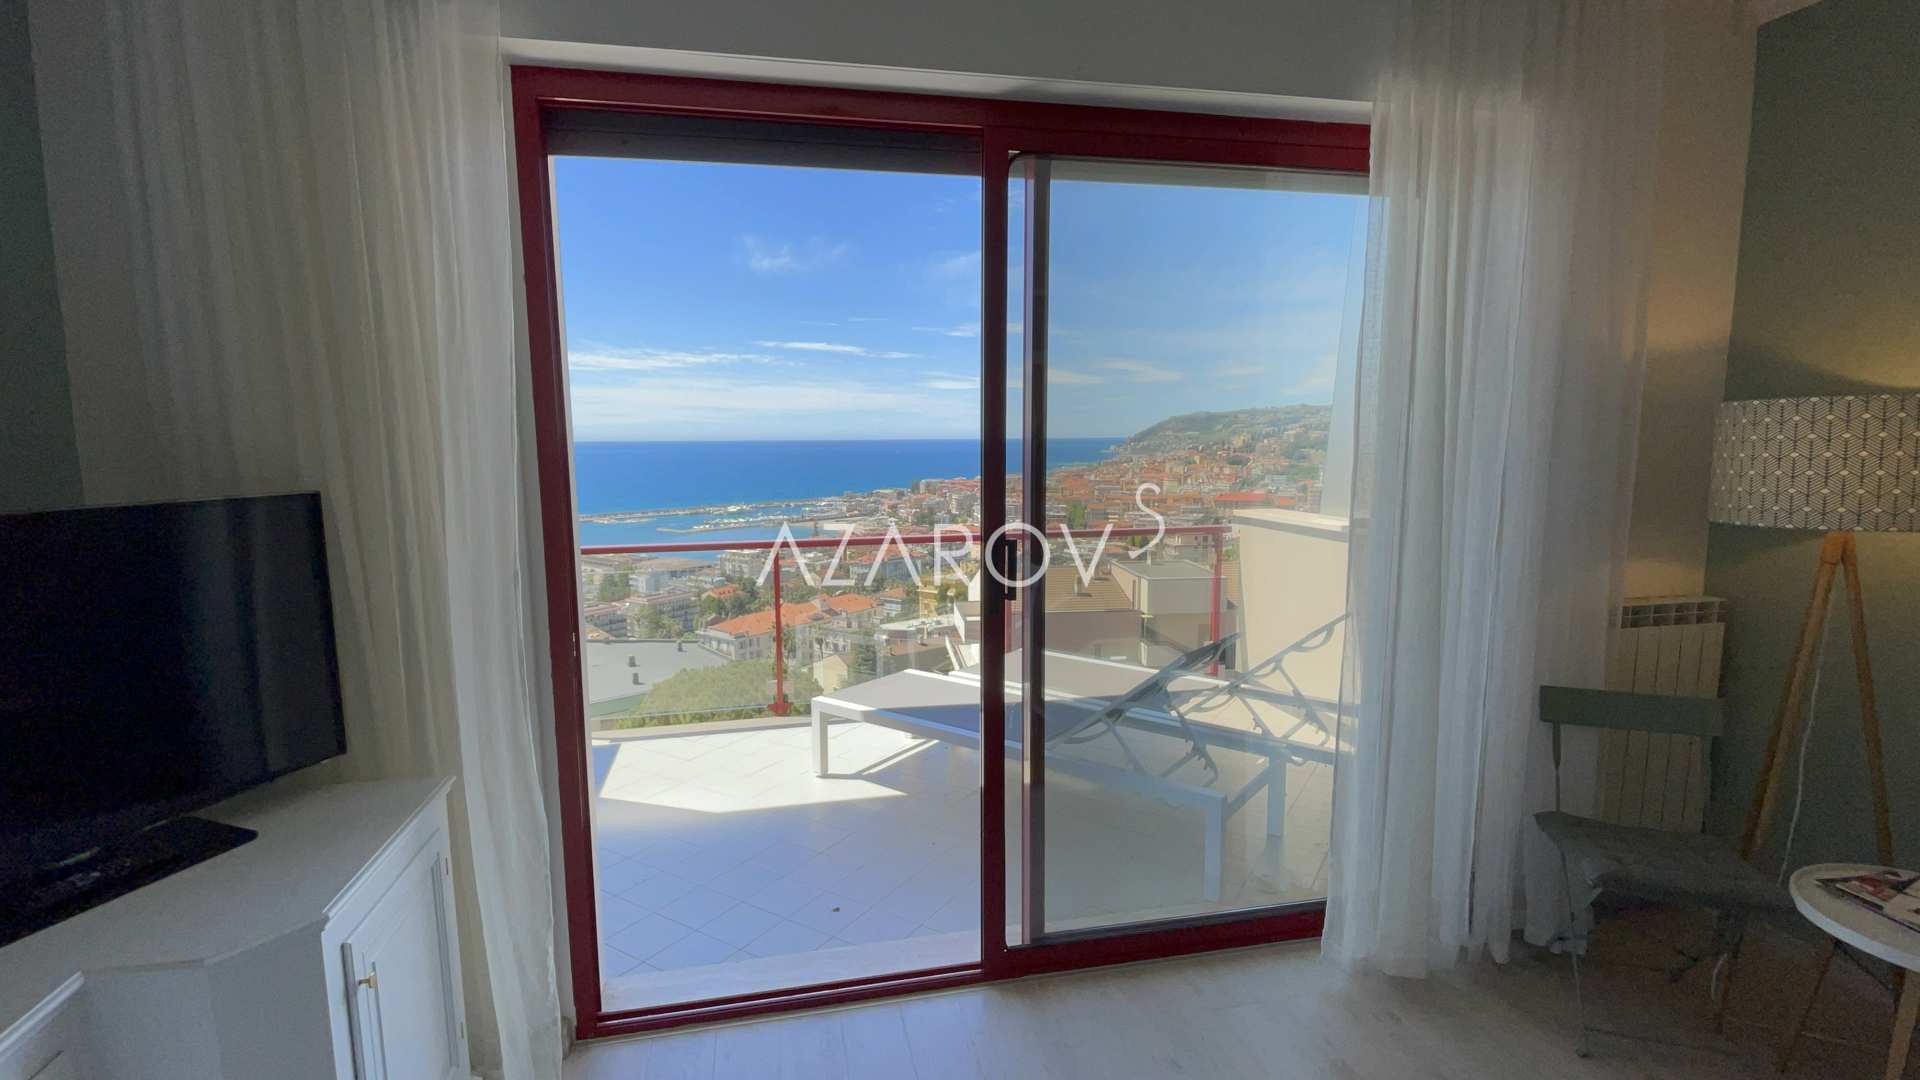 Zwei-Zimmer-Wohnung in Sanremo am Meer